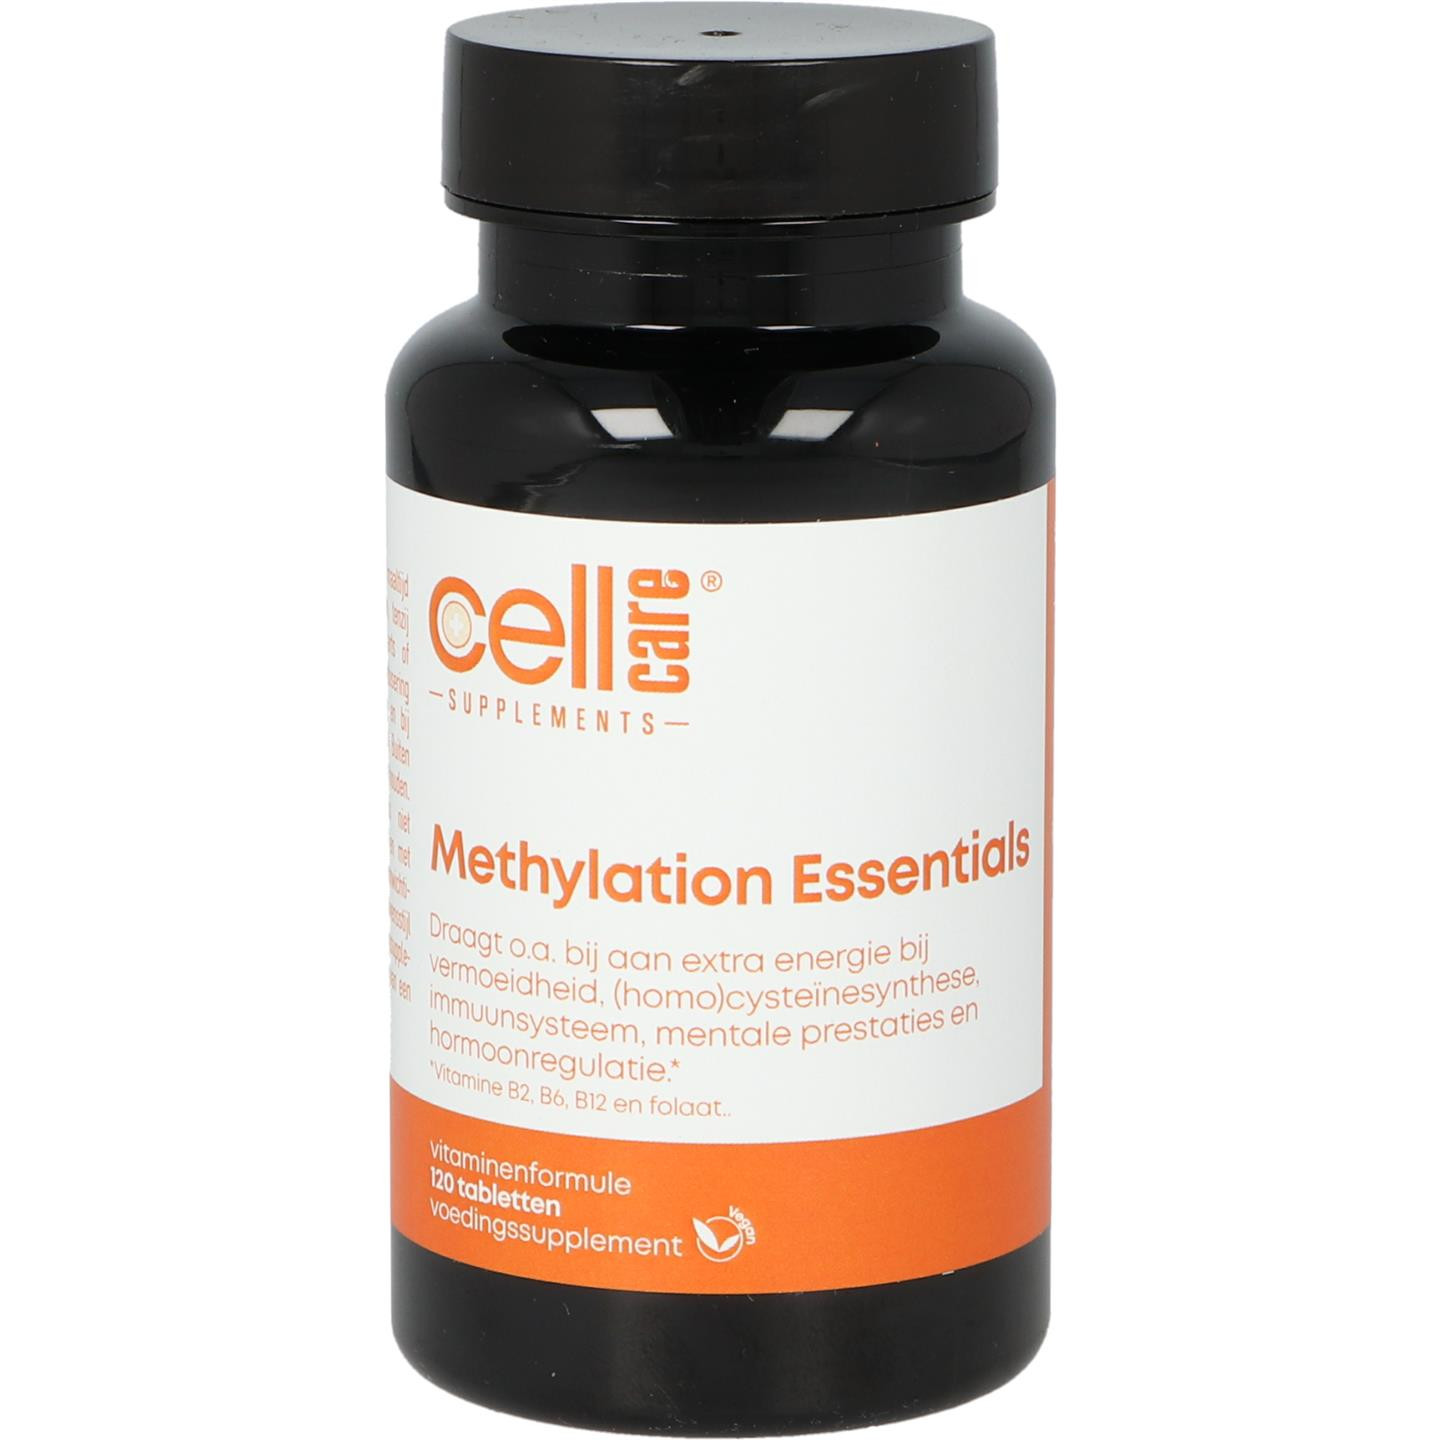 Methylation Essentials